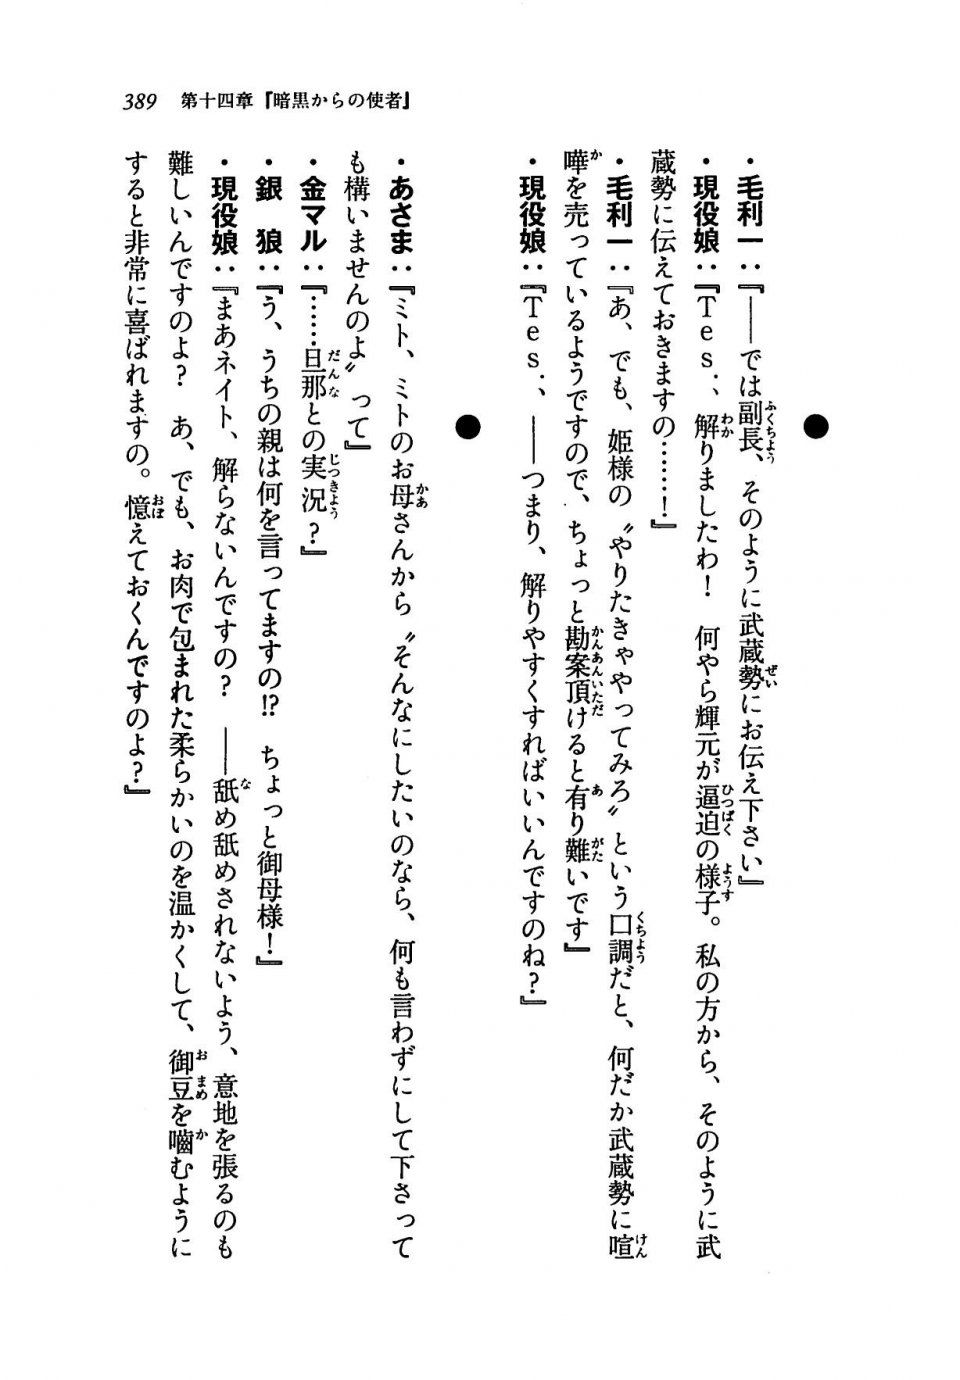 Kyoukai Senjou no Horizon LN Vol 19(8A) - Photo #389